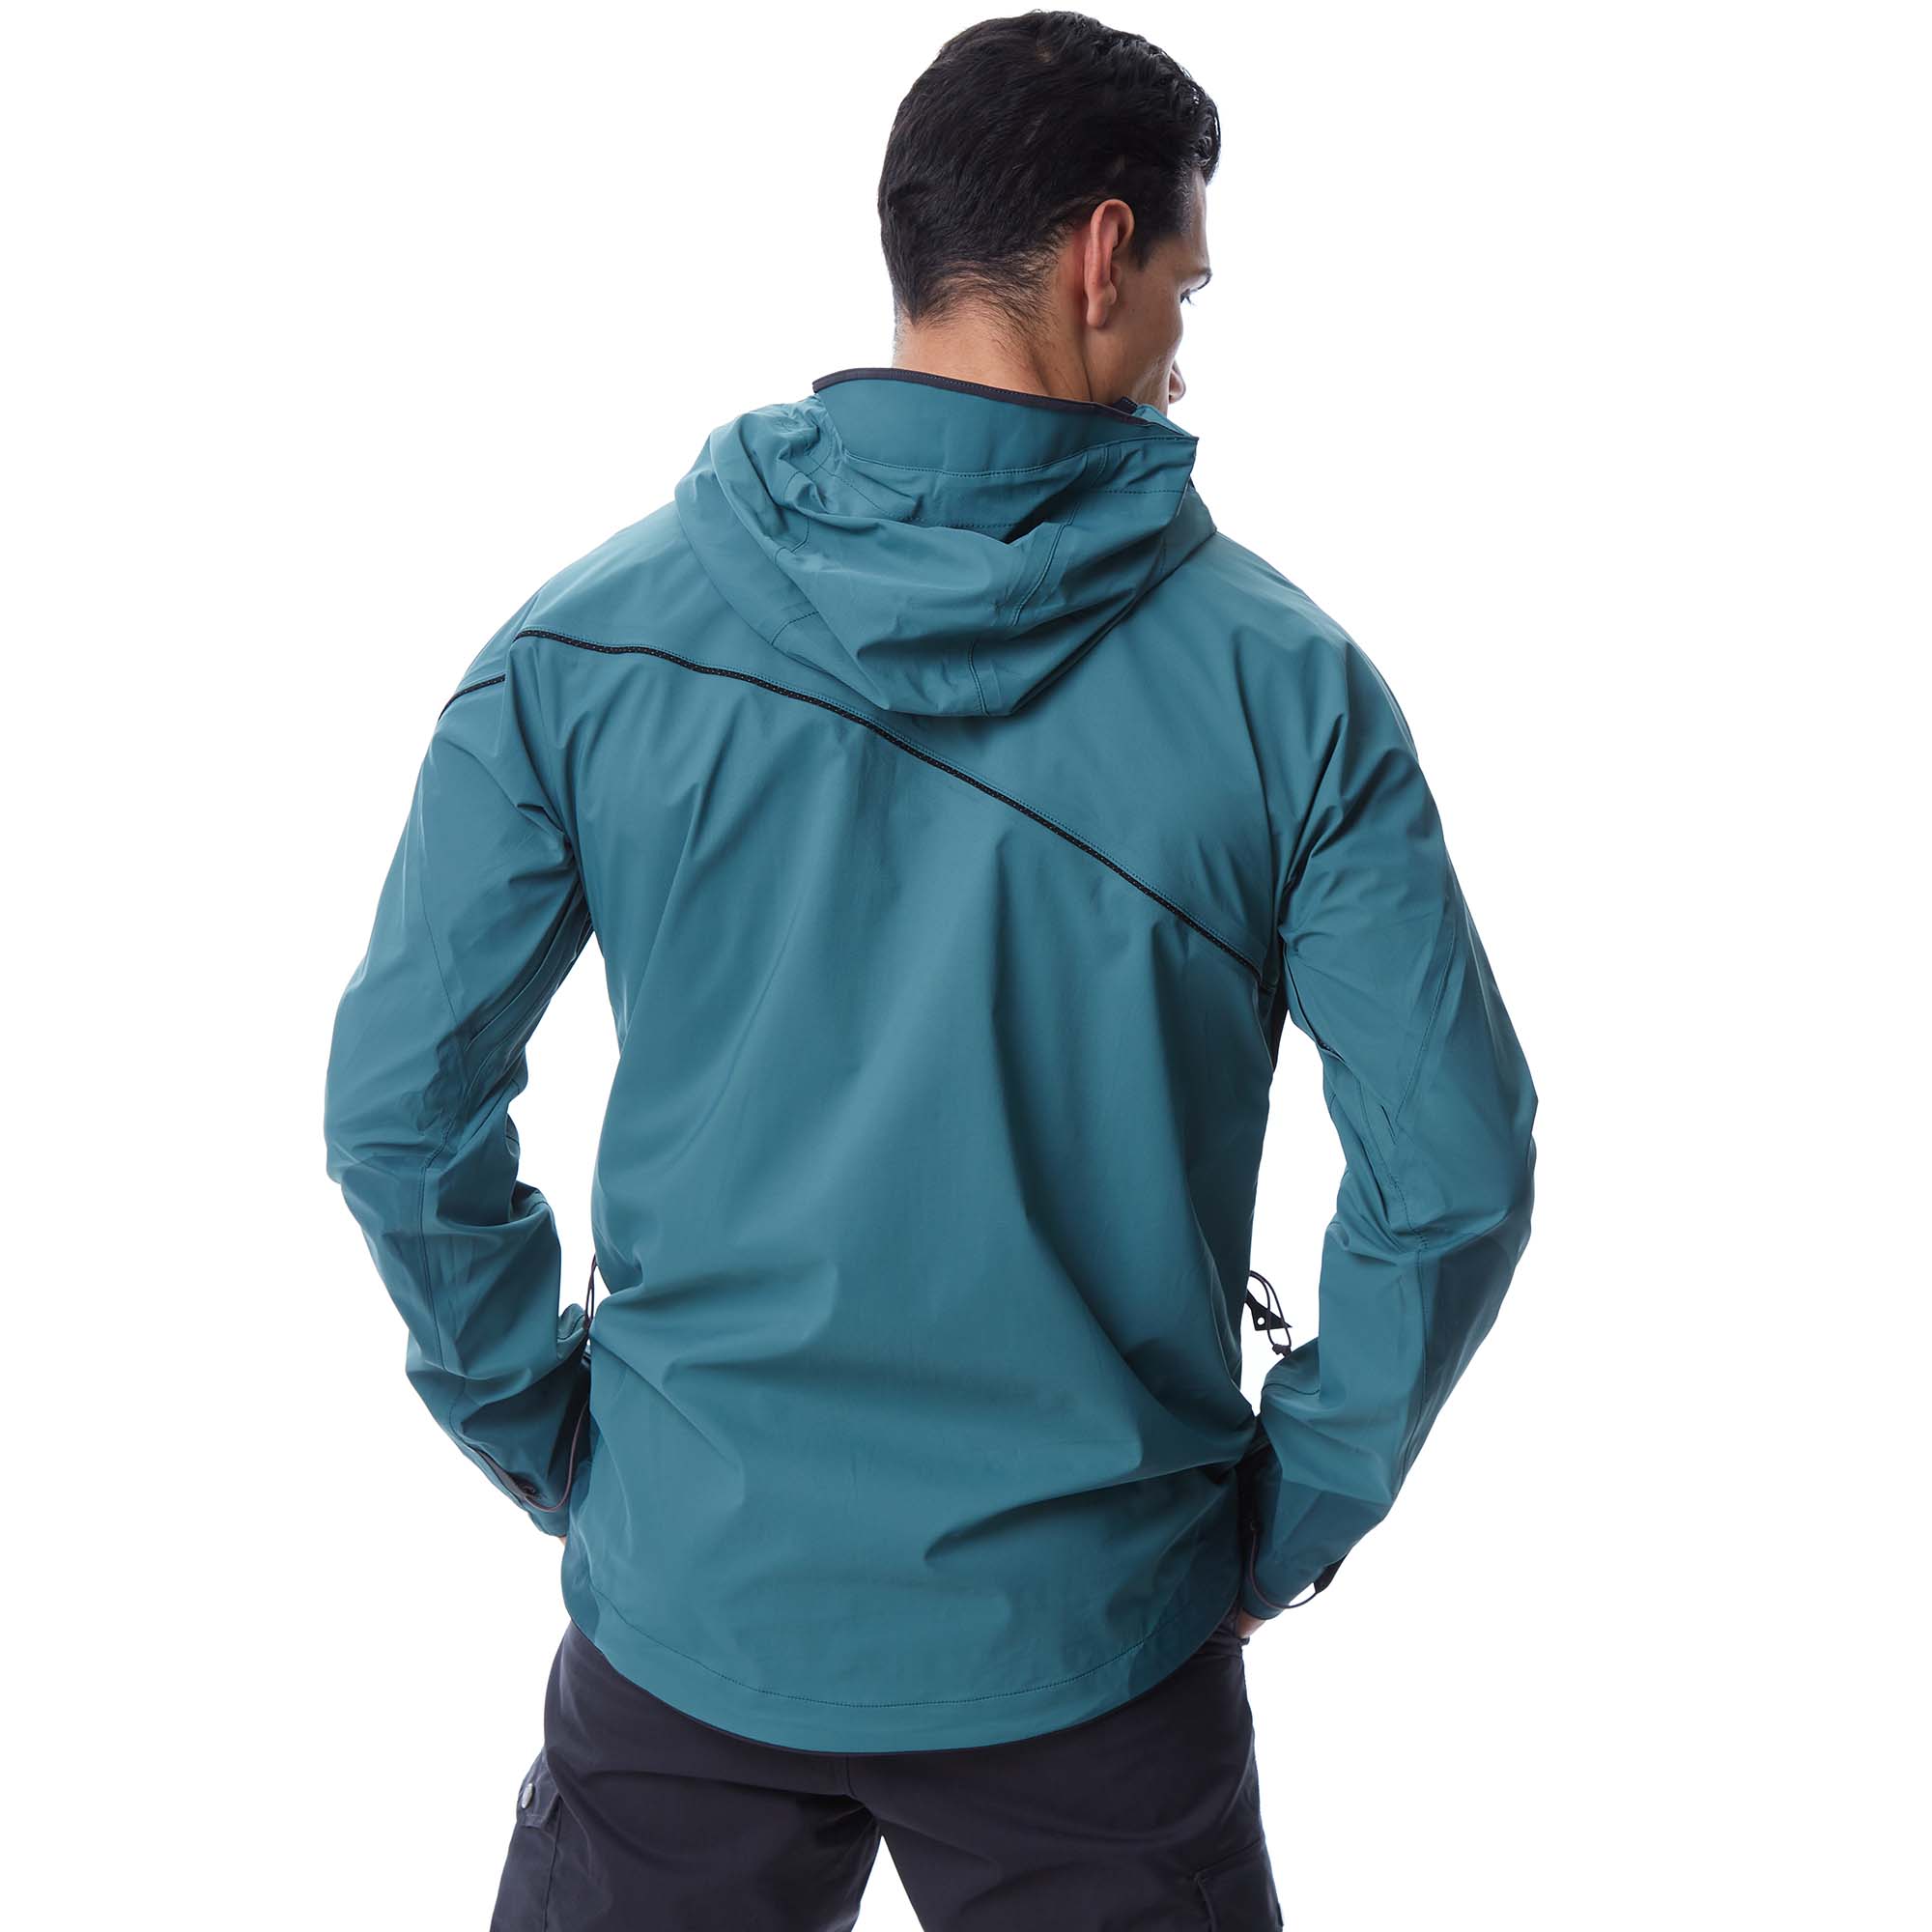 Klattermusen Allgrön 2.0 Hooded Waterproof Jacket